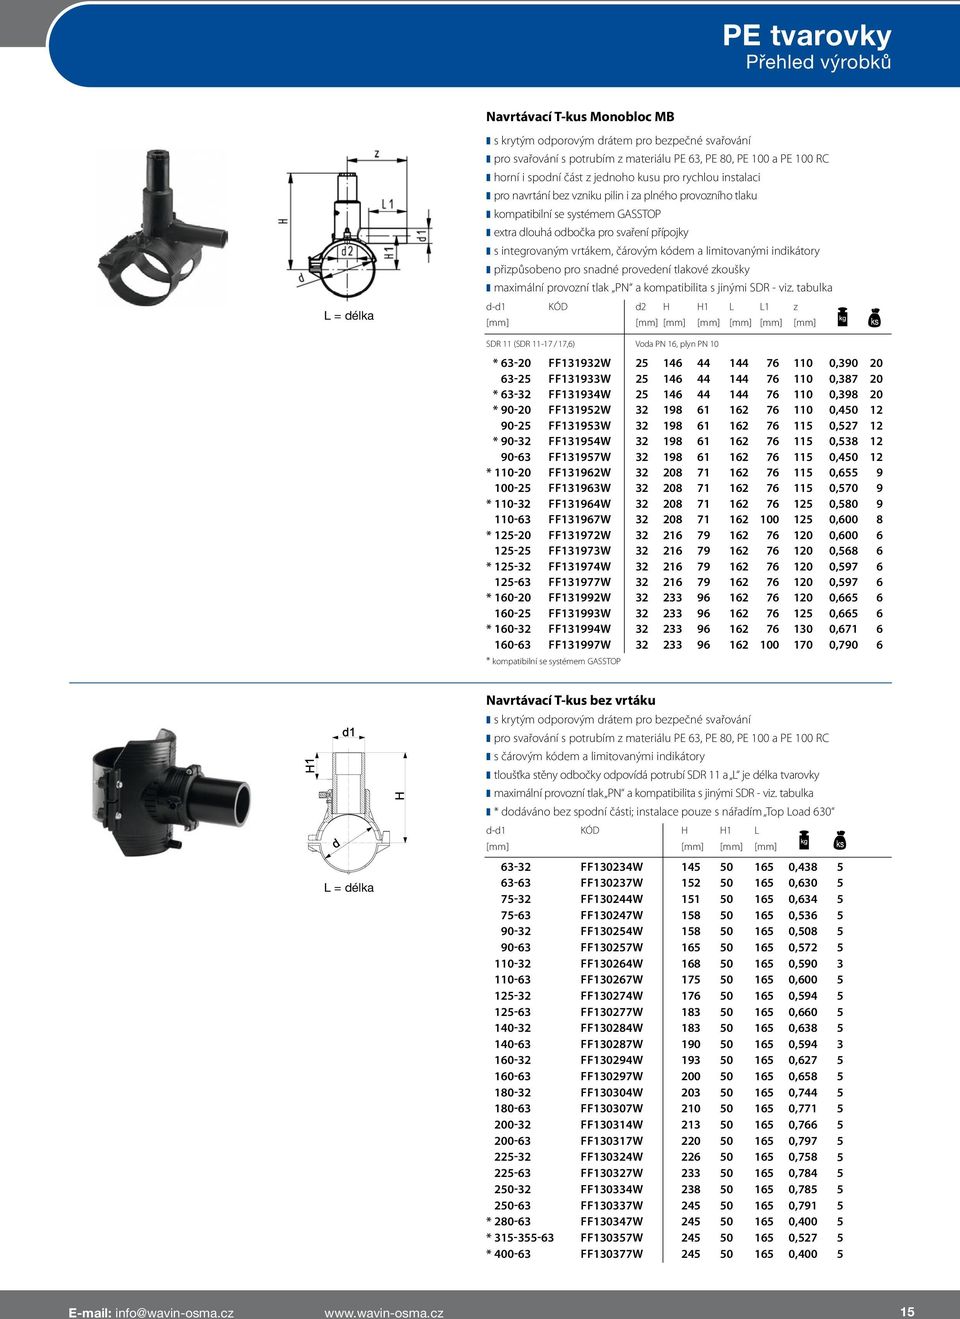 indikátory přizpůsobeno pro snadné provedení tlakové zkoušky maximální provozní tlak PN a kompatibilita s jinými SDR - viz.